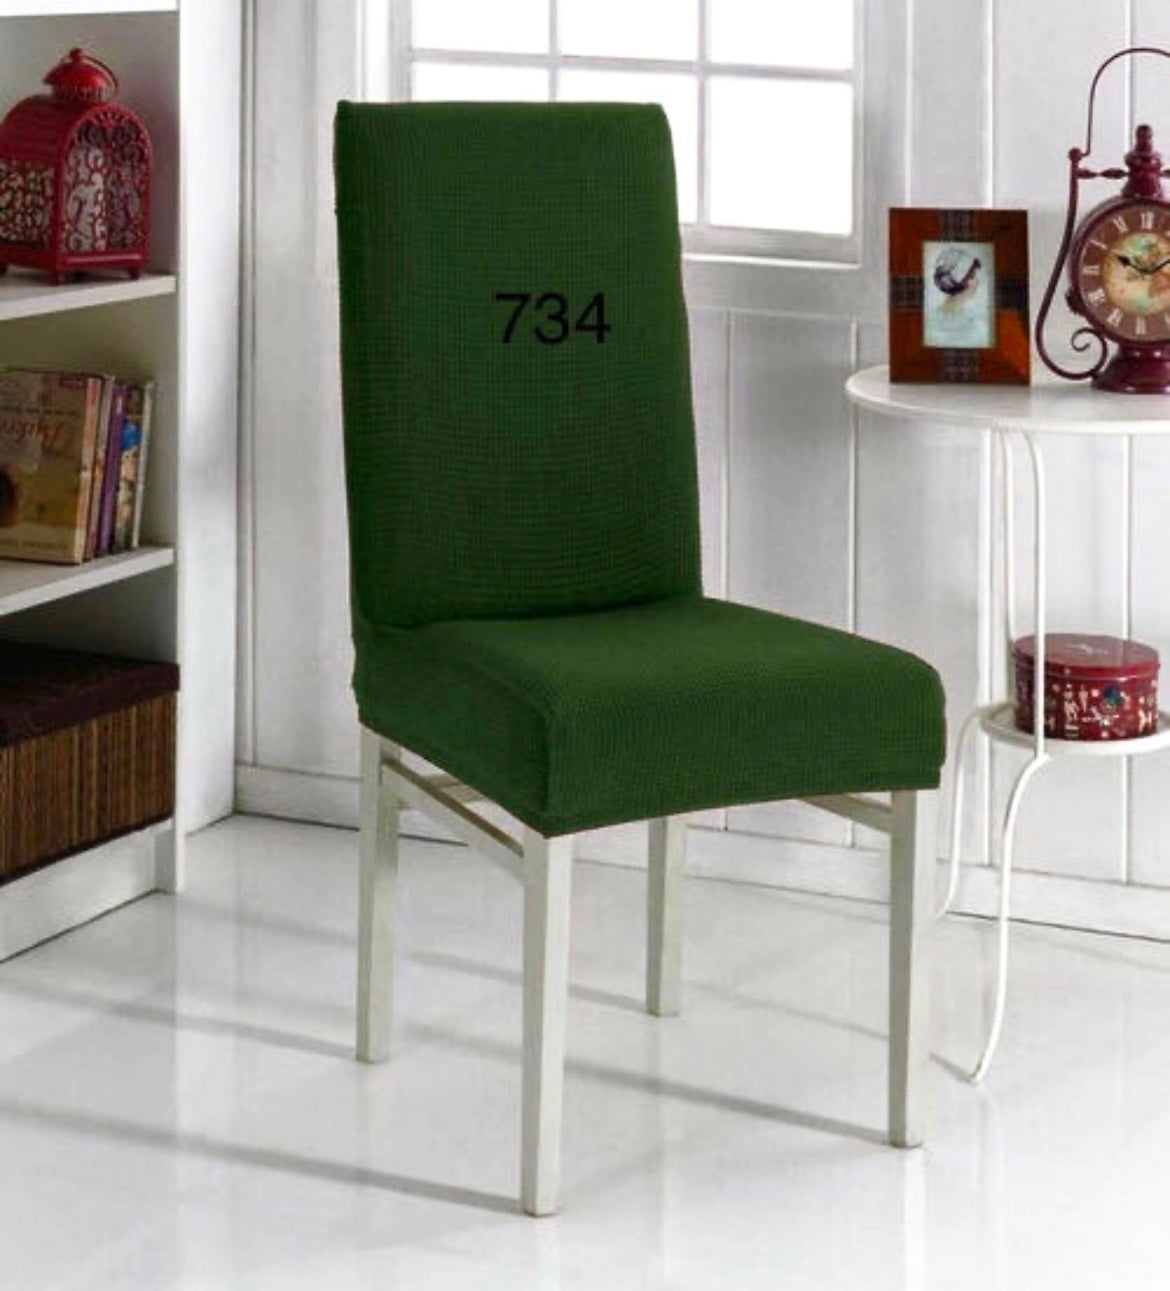 Navlake za stolice ELEGANT / SITNI UZORAK 734 tamnija zelena